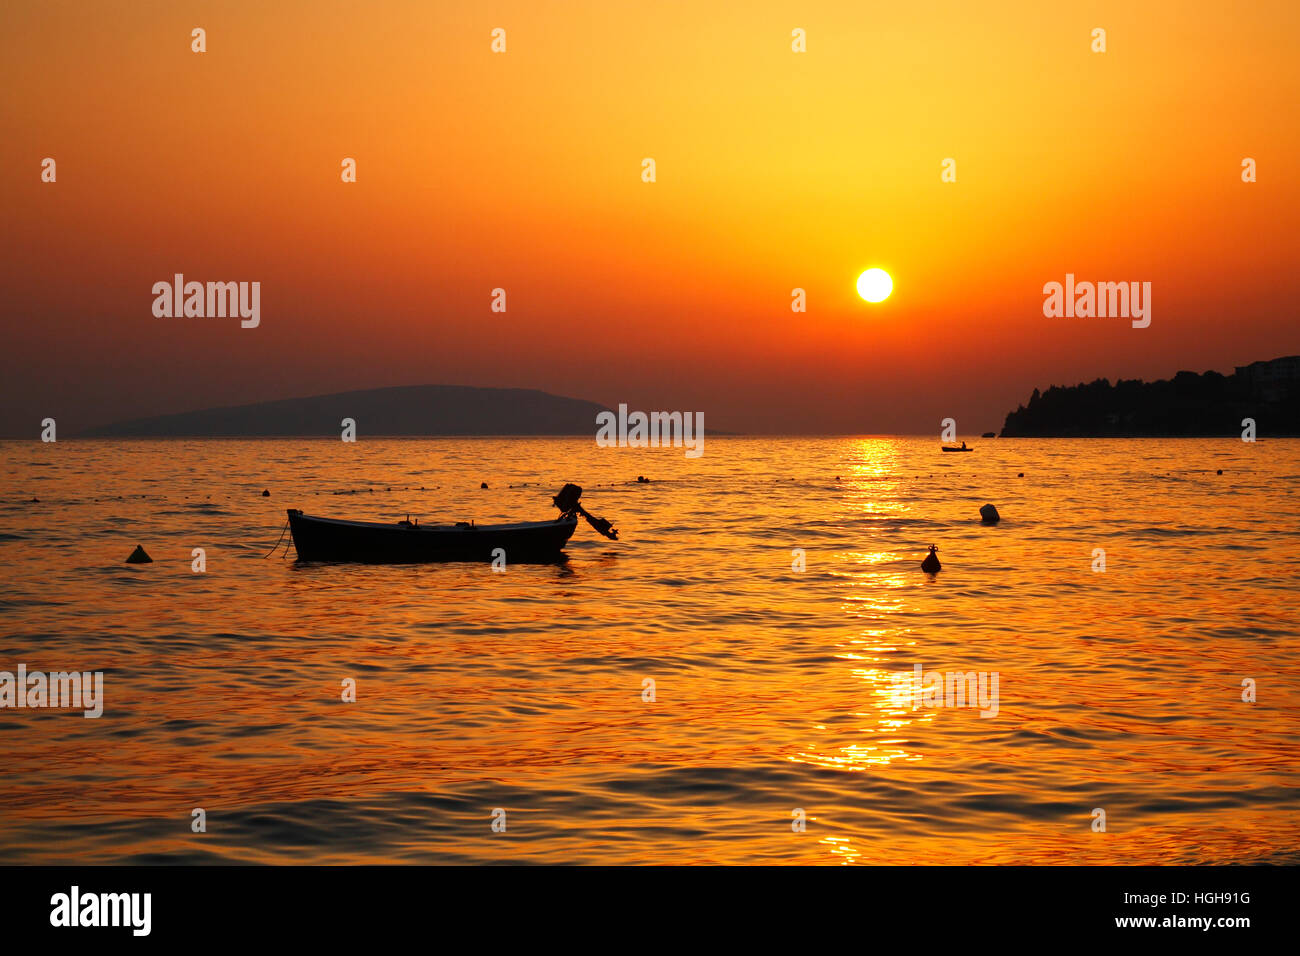 Typical sunset on the sea in Dalmatia, Croatian coast Stock Photo